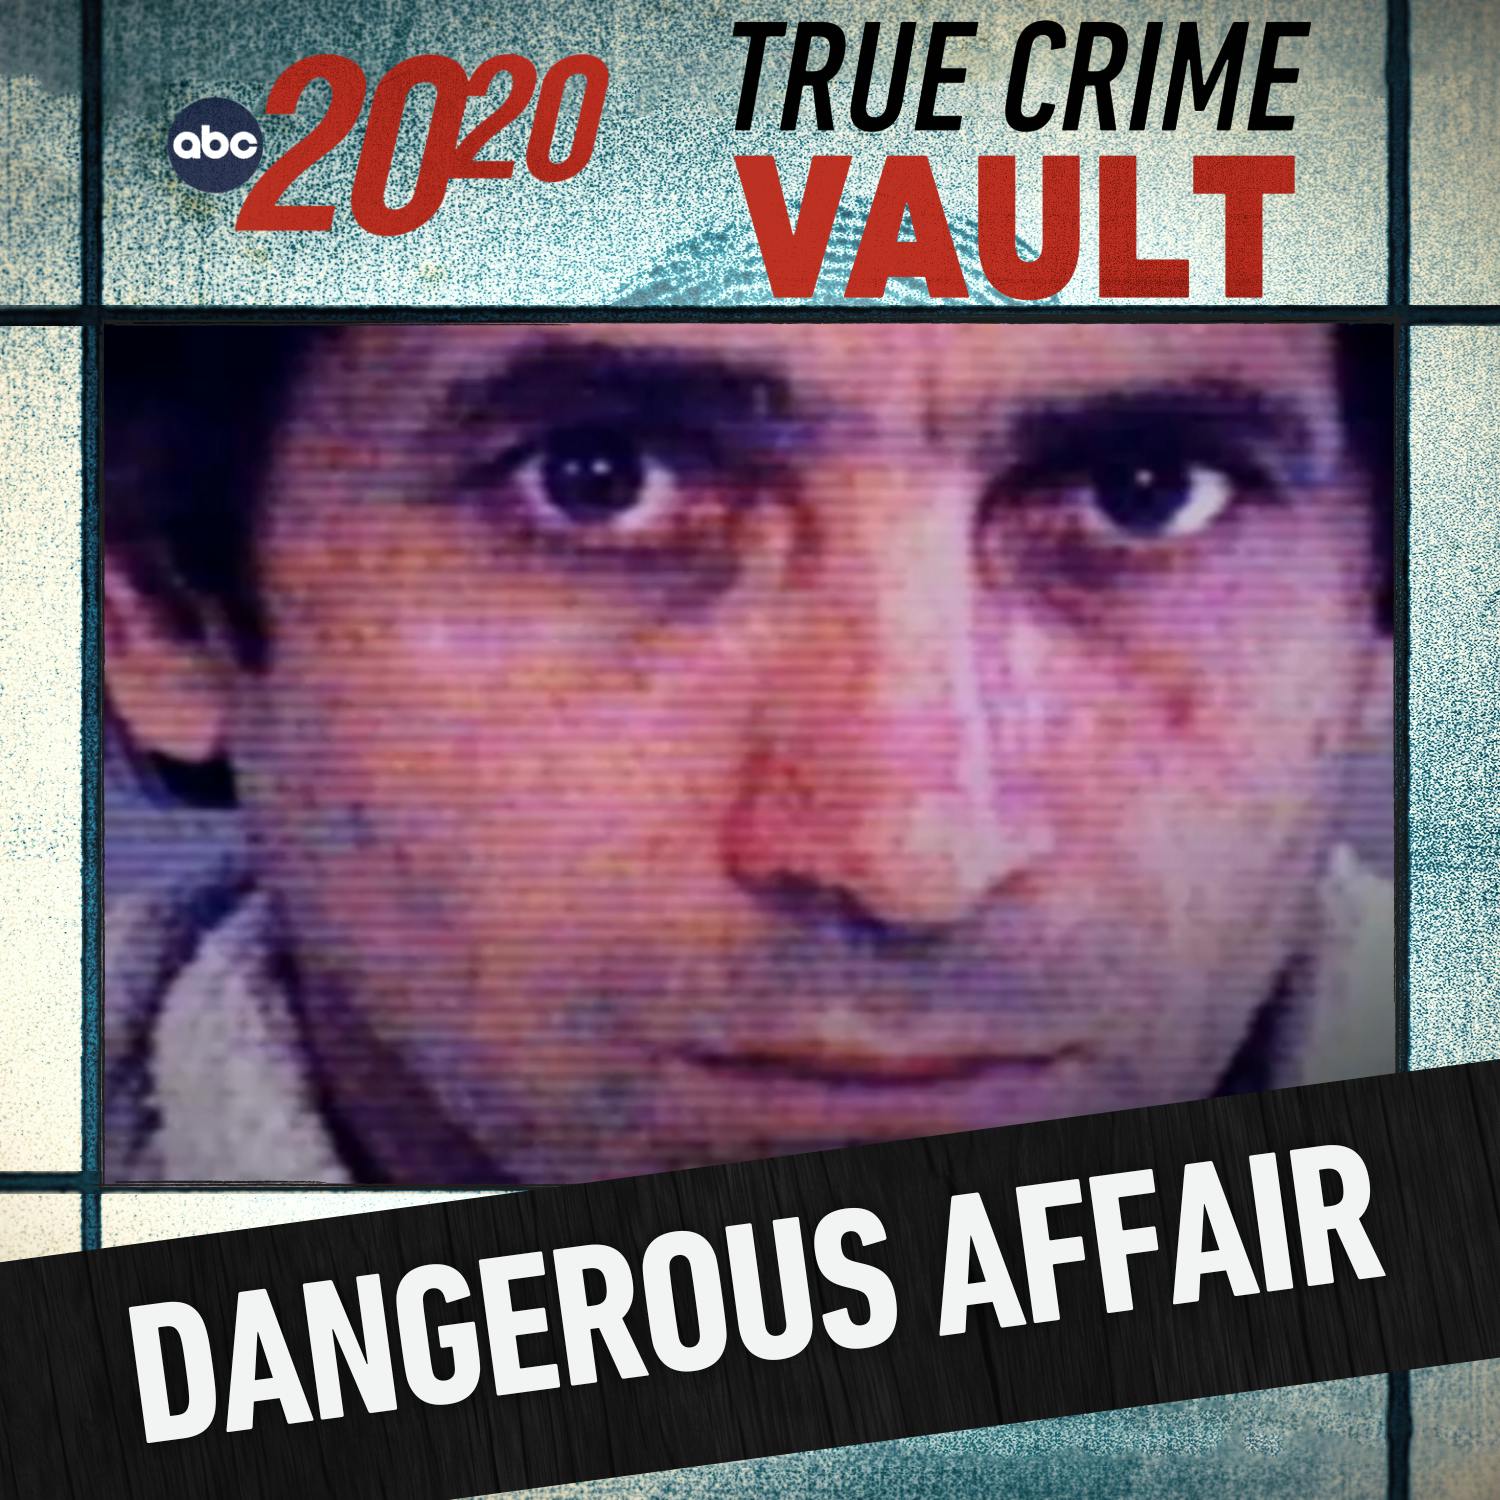 True Crime Vault: A Dangerous Affair